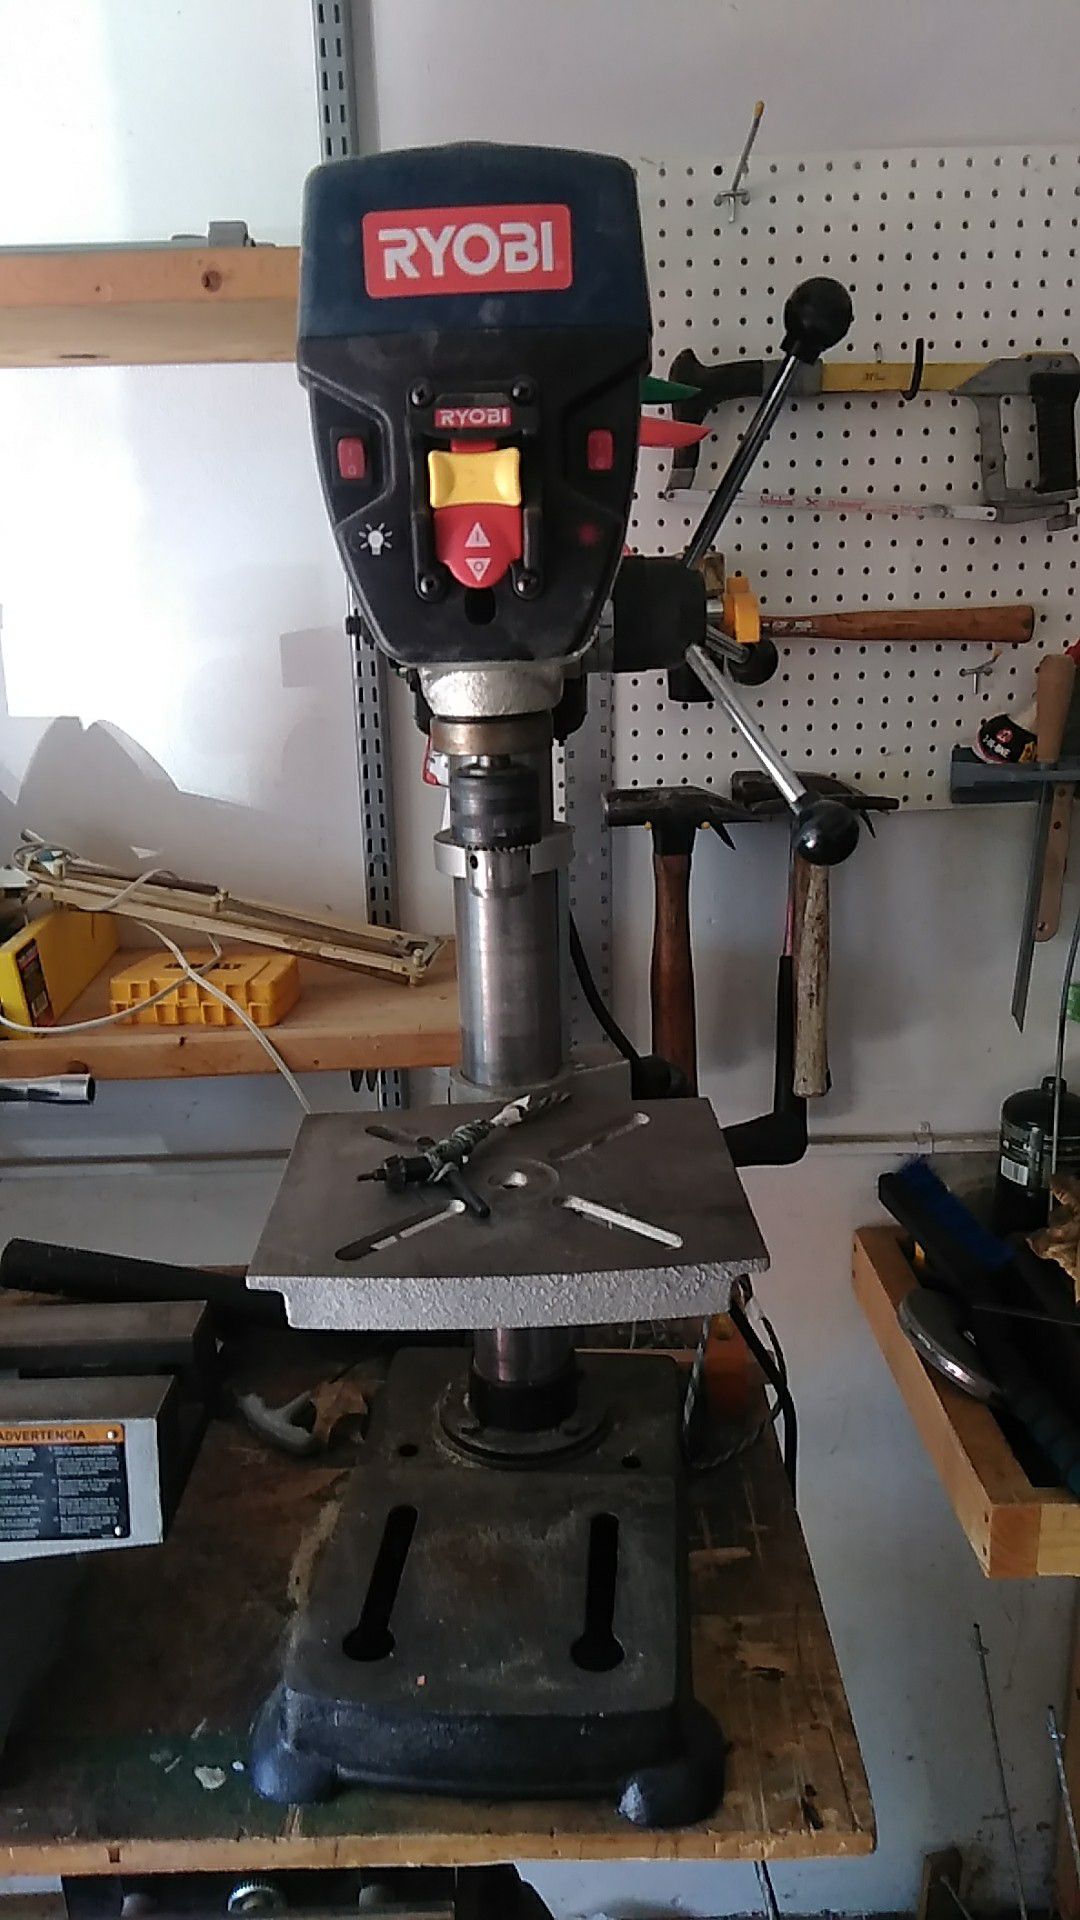 Ryobi 10" drill press